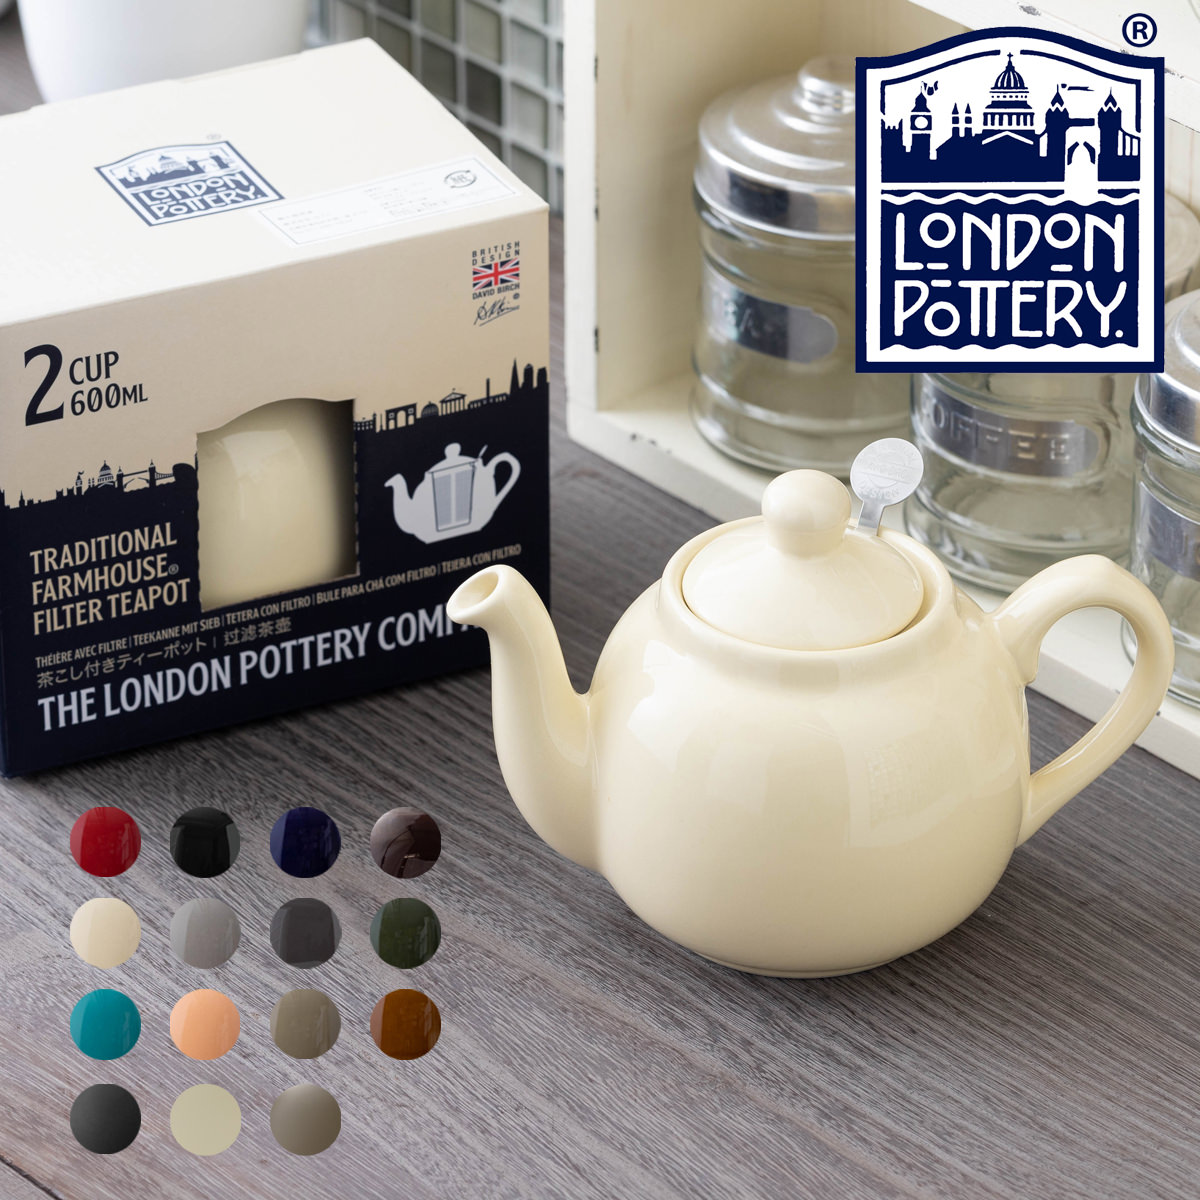 London Pottery ティーポット 600ml 英国デザイン ロンドンポタリー 2カップ 陶器 ボックス付き 無地 プレーン